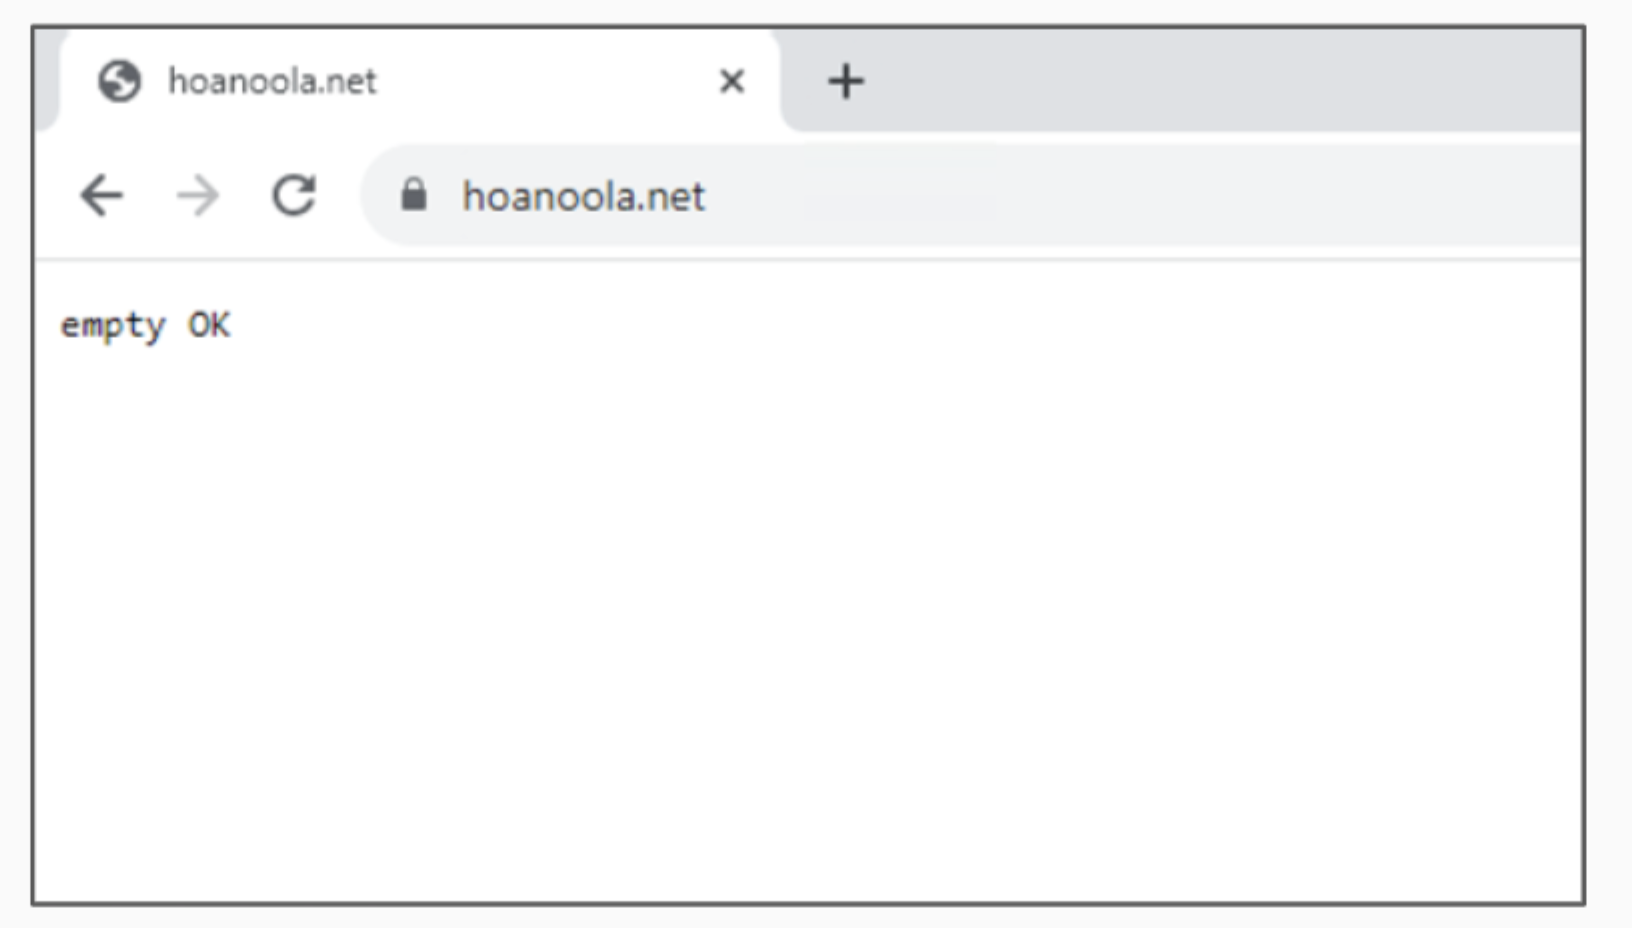 画像 4 は、空白 Web ページのスクリーンショットです。「empty OK」と表示されています。アドレスは hoanoola[.]net です。